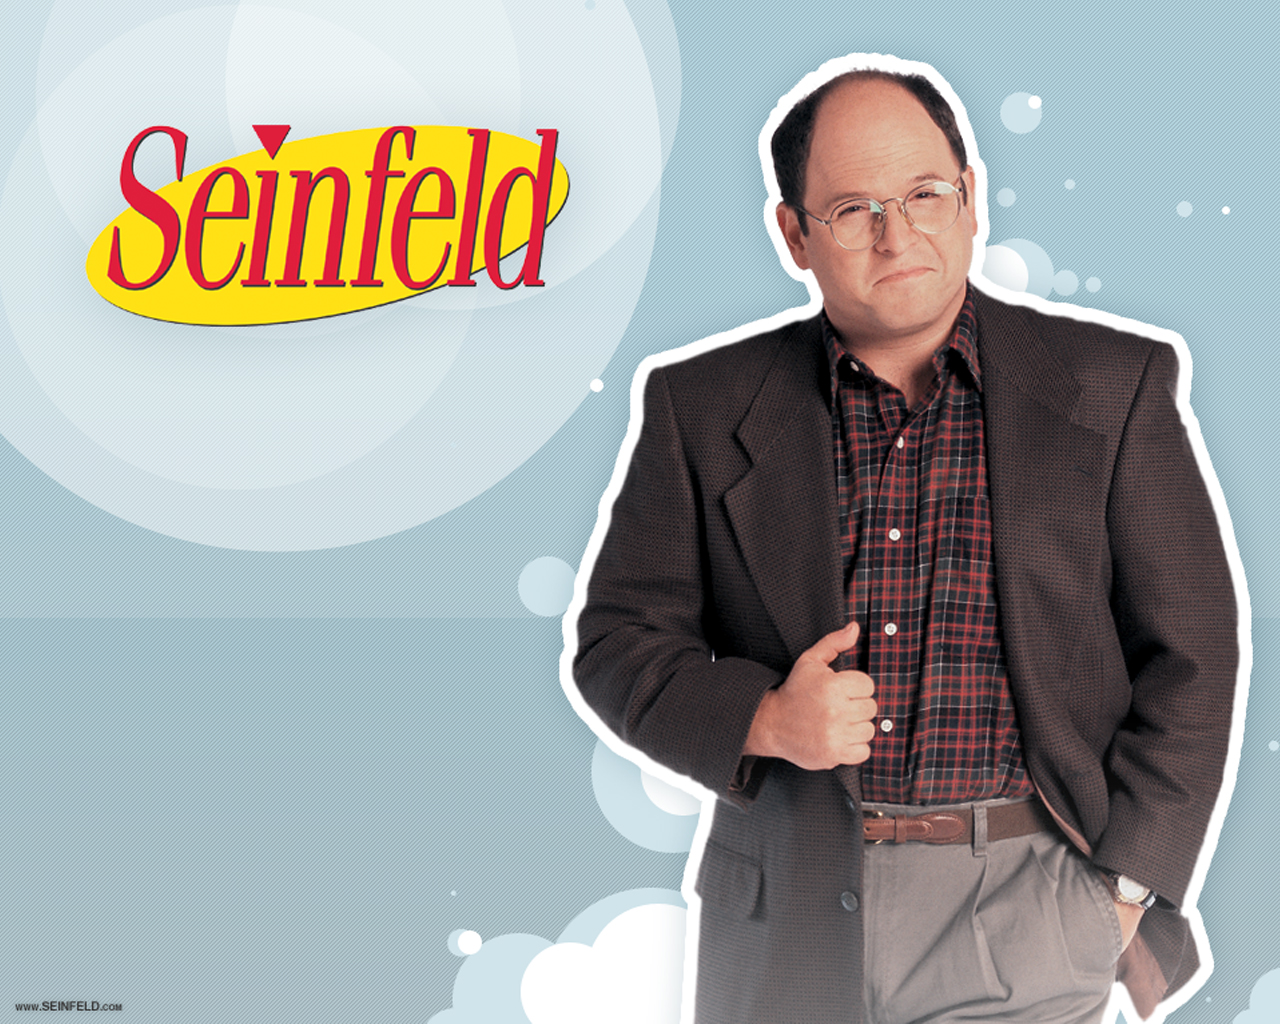 Seinfeld - Seinfeld Wallpaper 425016 - Fanpop